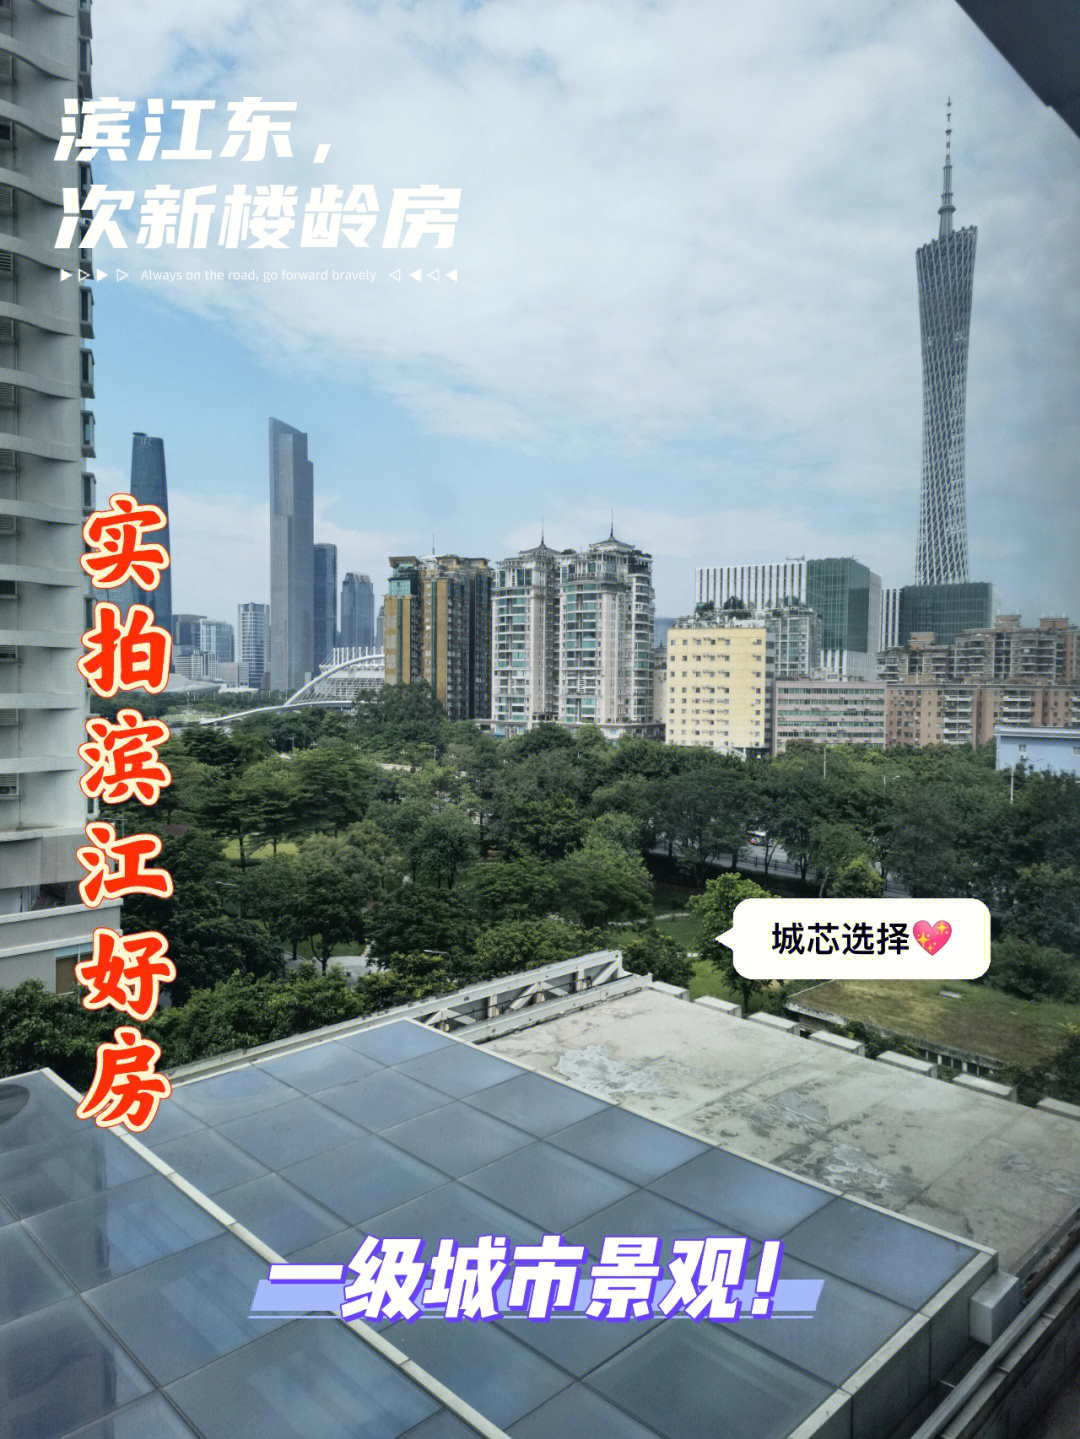 珠江新岸公寓,它是叫公寓,不是公寓来着,09年的次新楼龄,出门就是广州